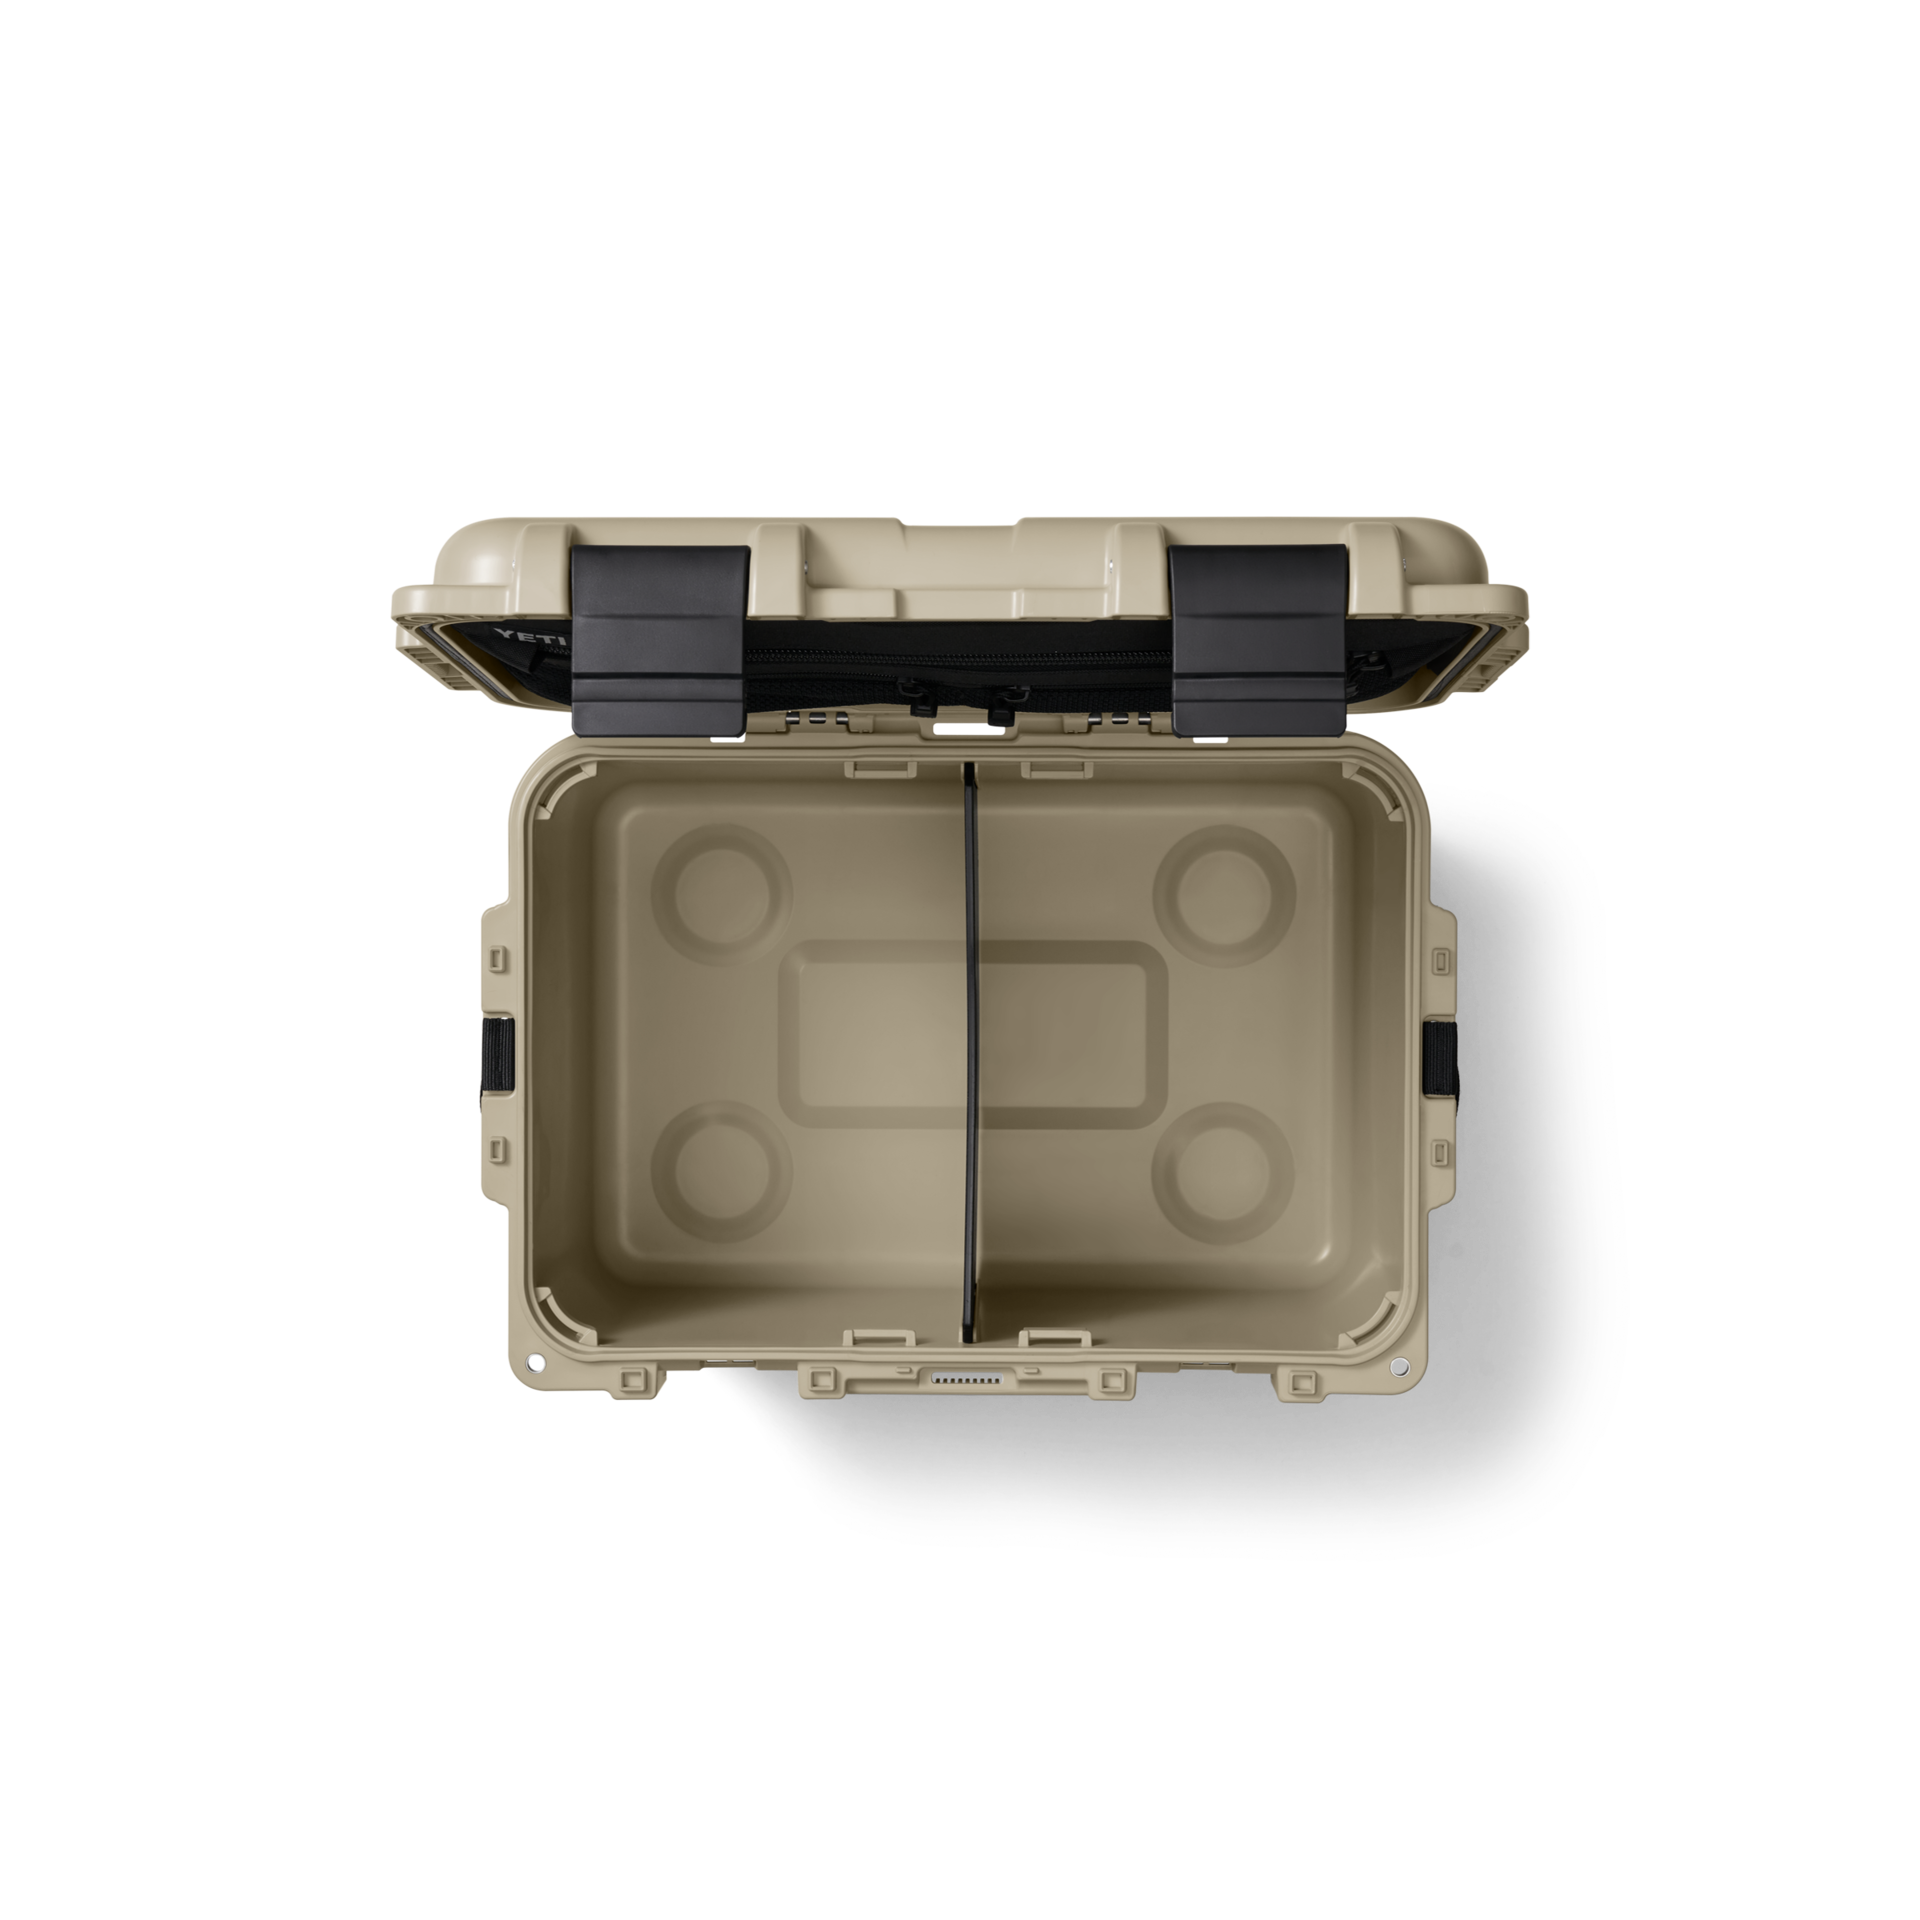 Yeti Loadout Go Box 30 Gear Case Desert Tan - Dogfish Tackle & Marine